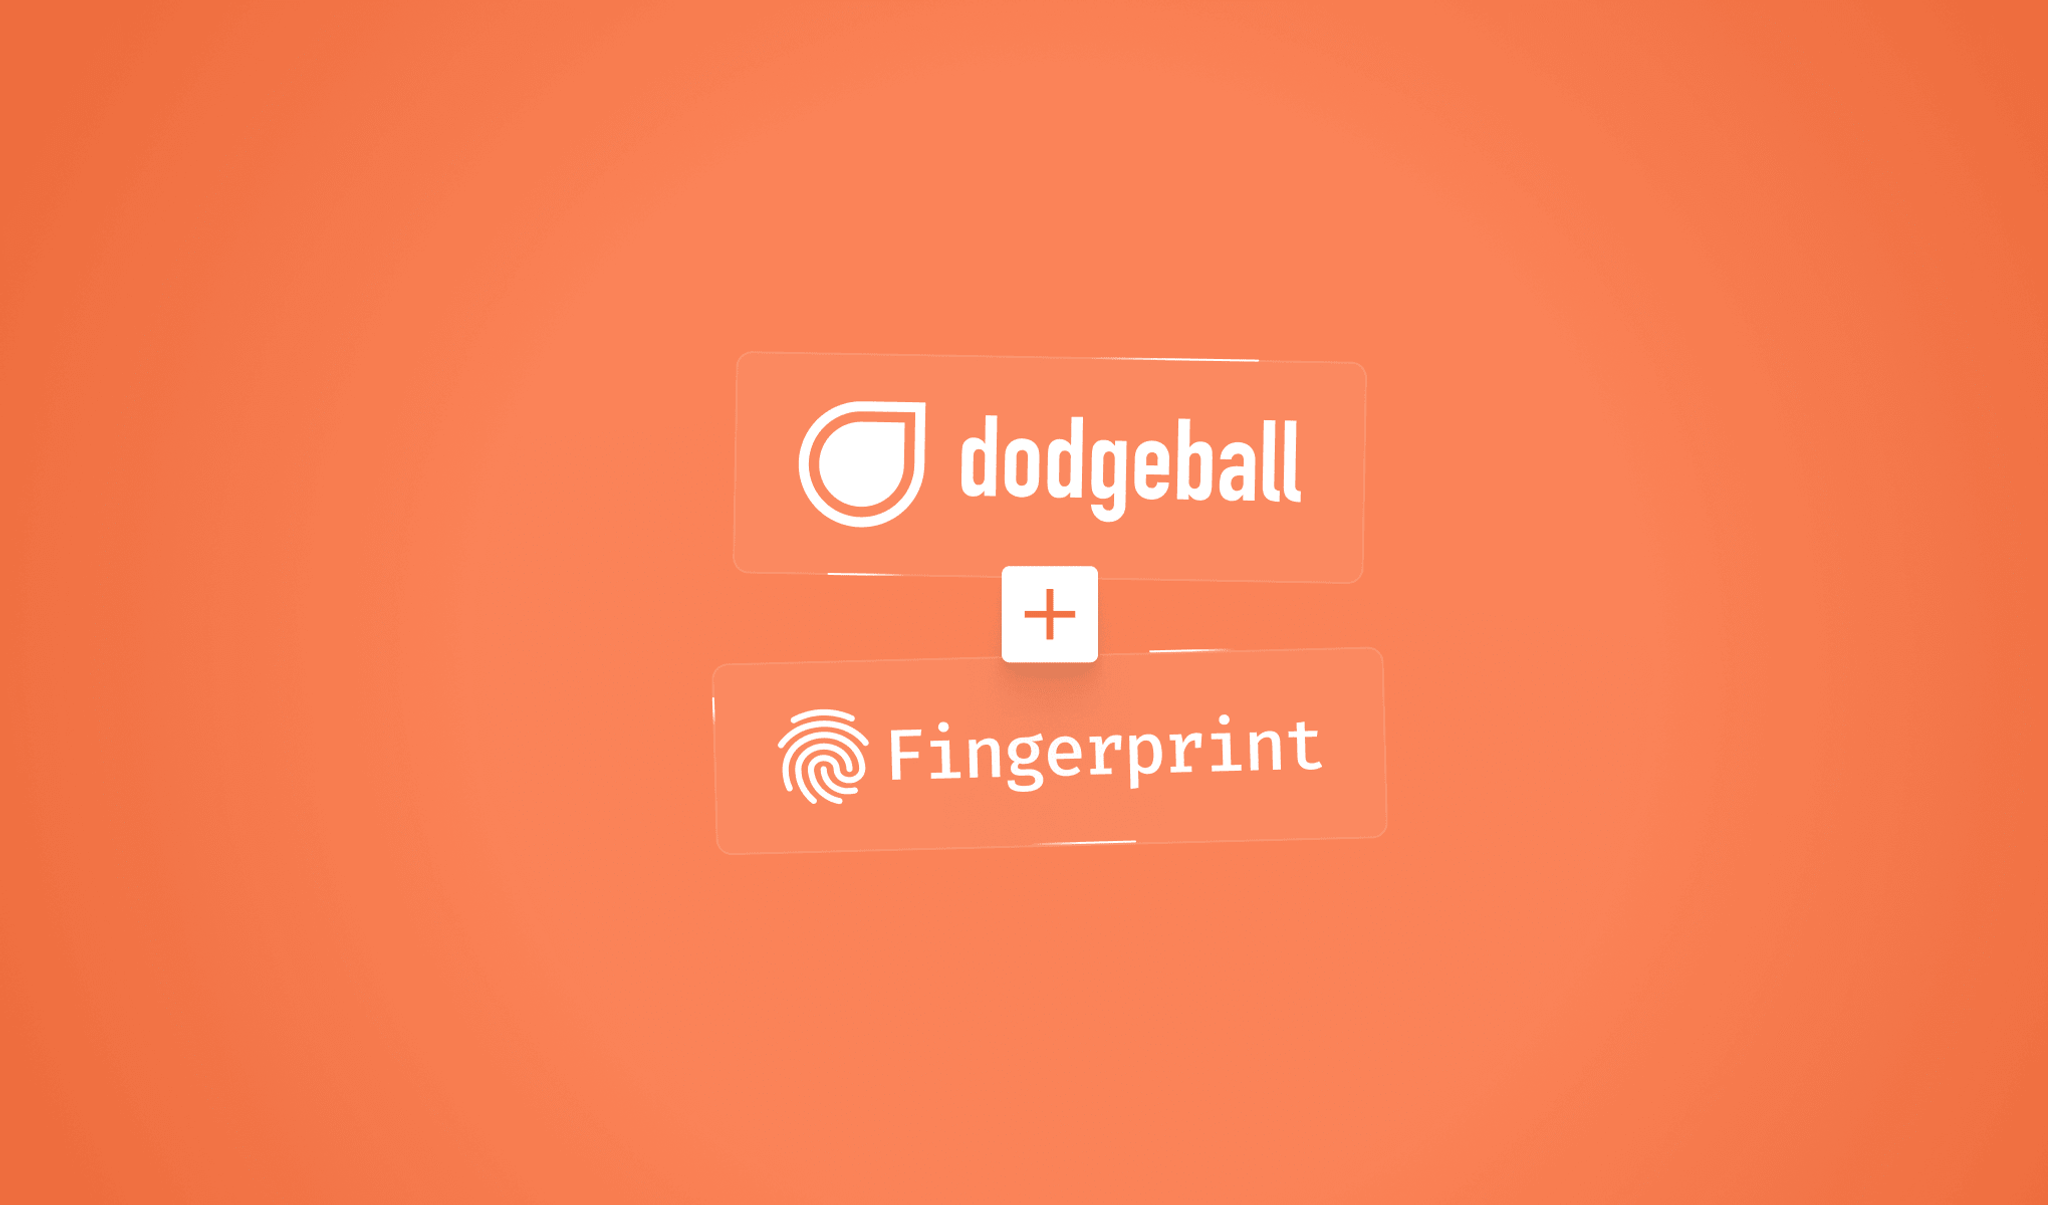 dodgeball fingerprint